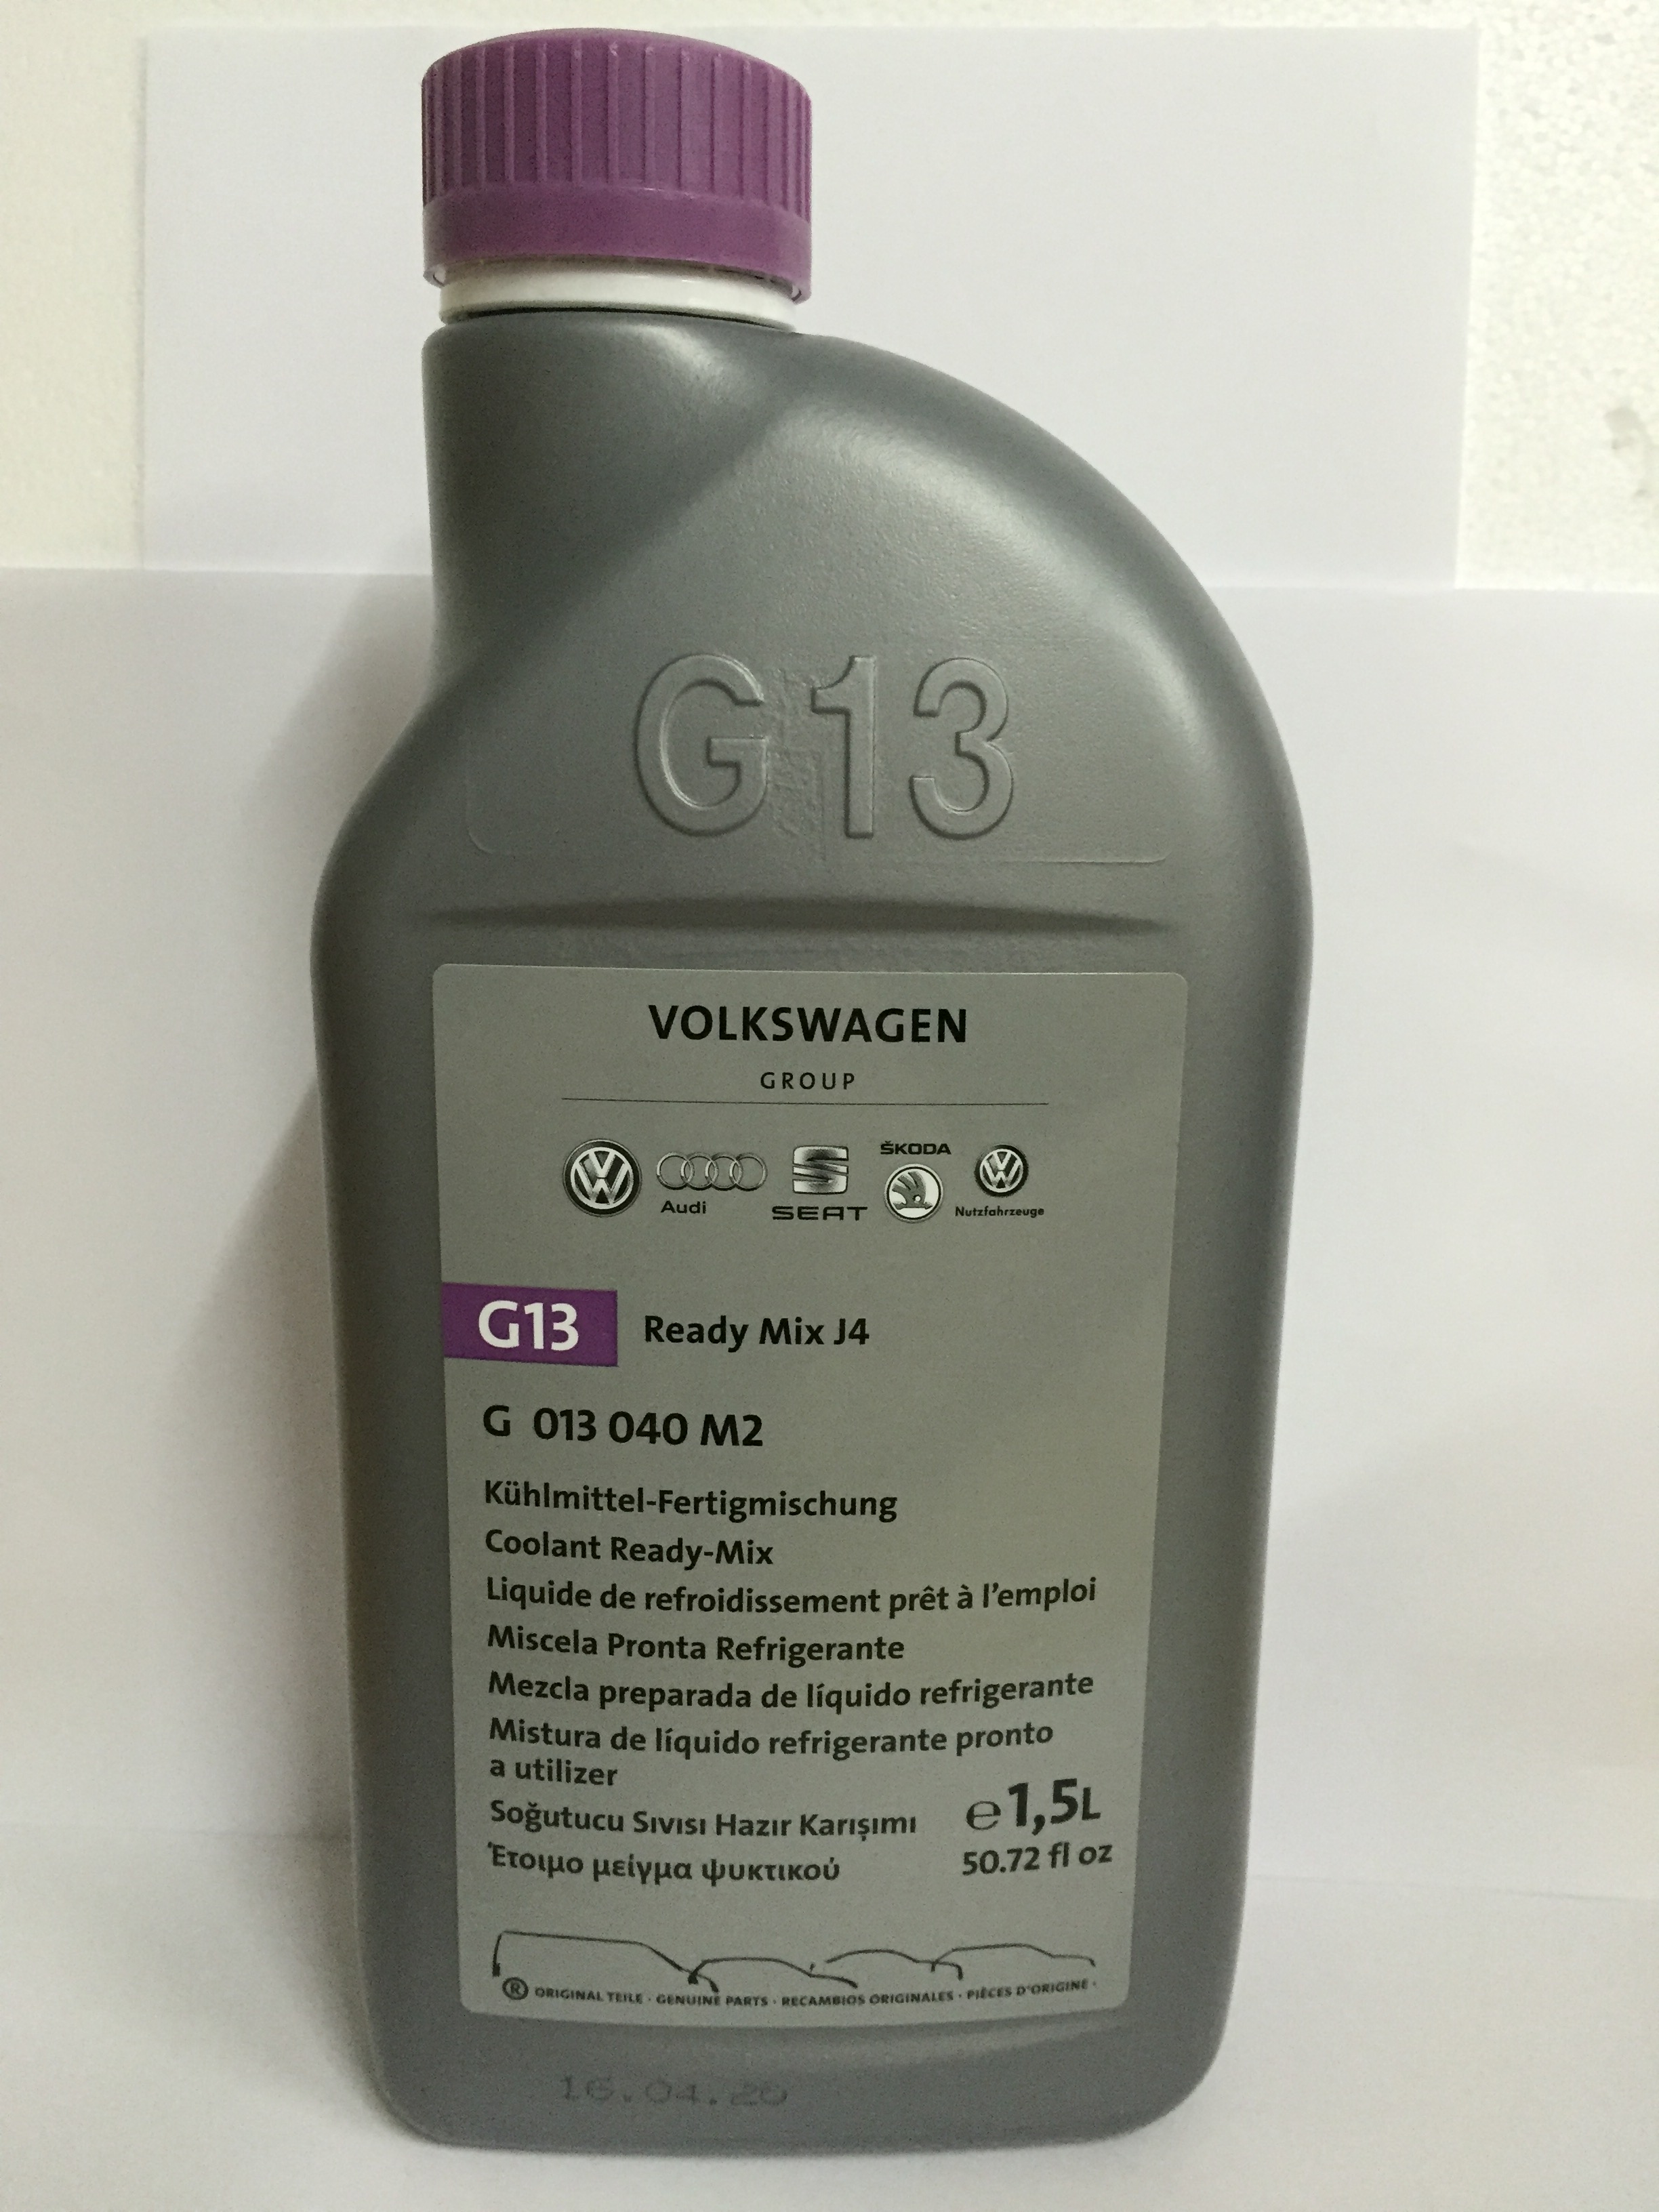 OilandParts - VW Kühlmittelzusatz G13 Ready Mix G013 040 M5 - 1,5